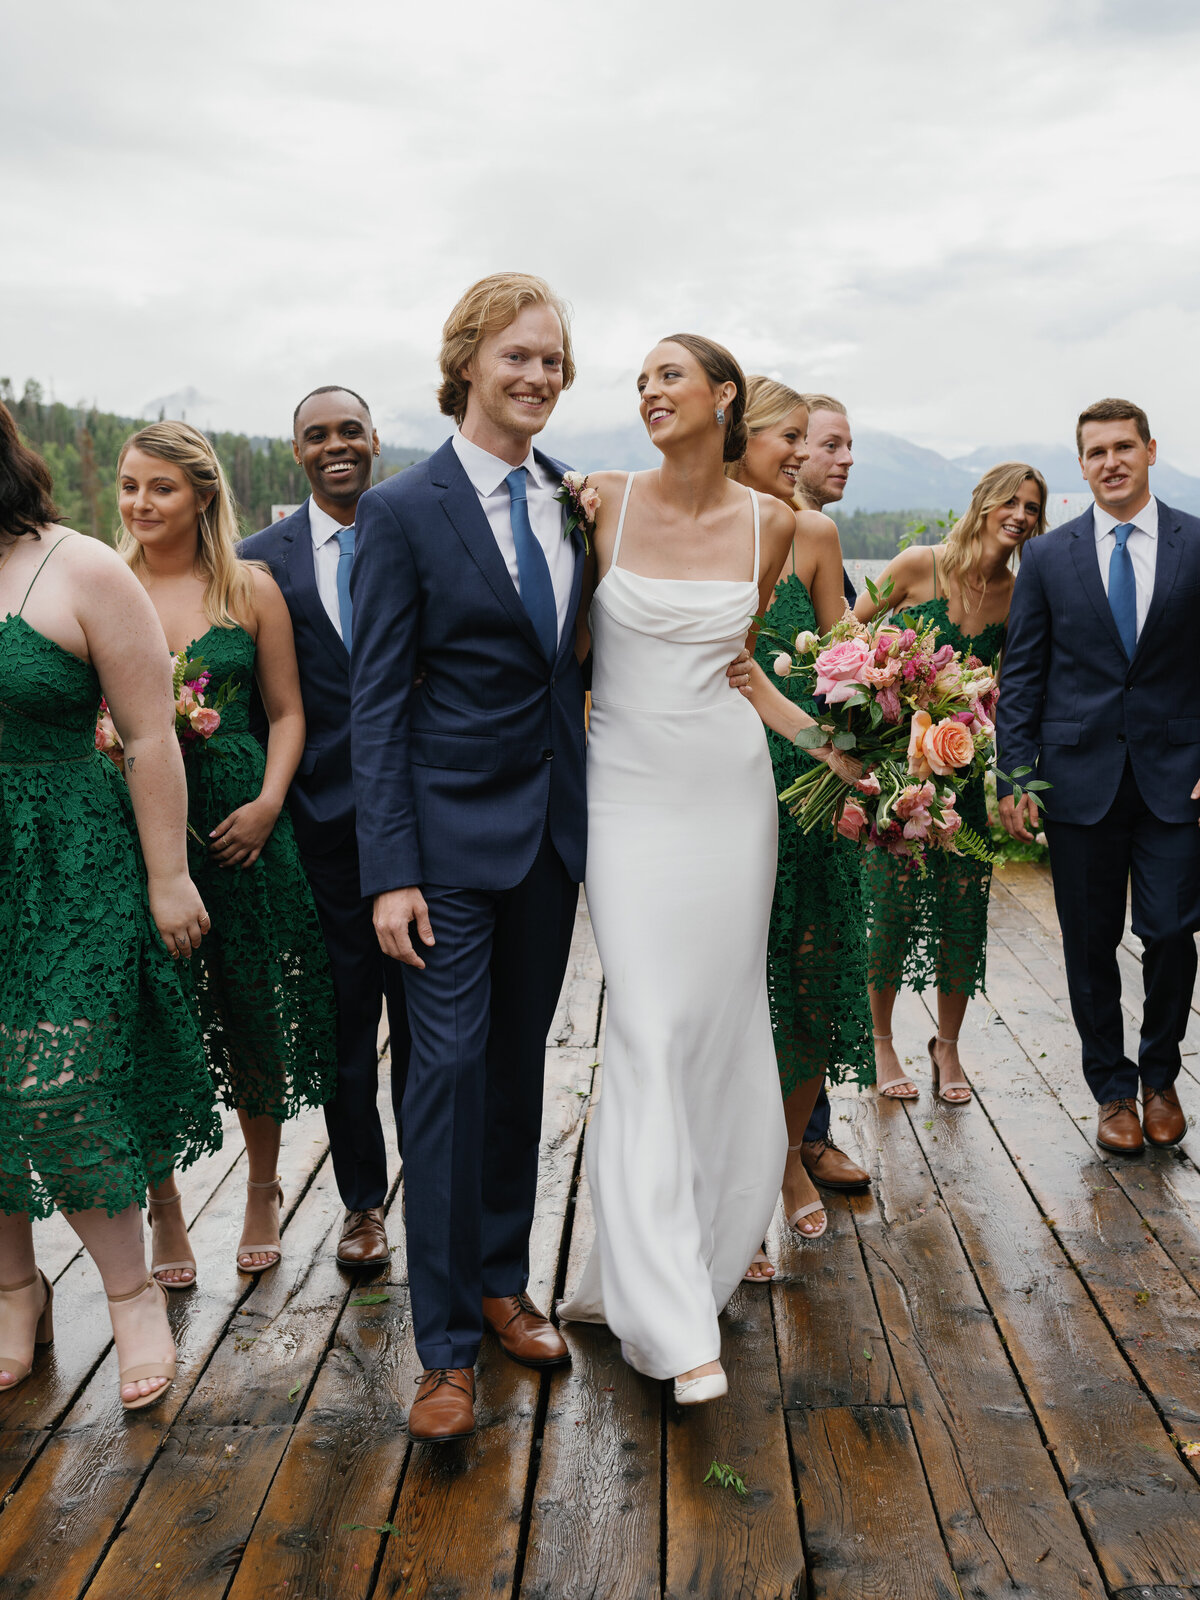 Logan & Ben - Fashion-Forward Mountaintop Wedding in Telluride, Colorado-32